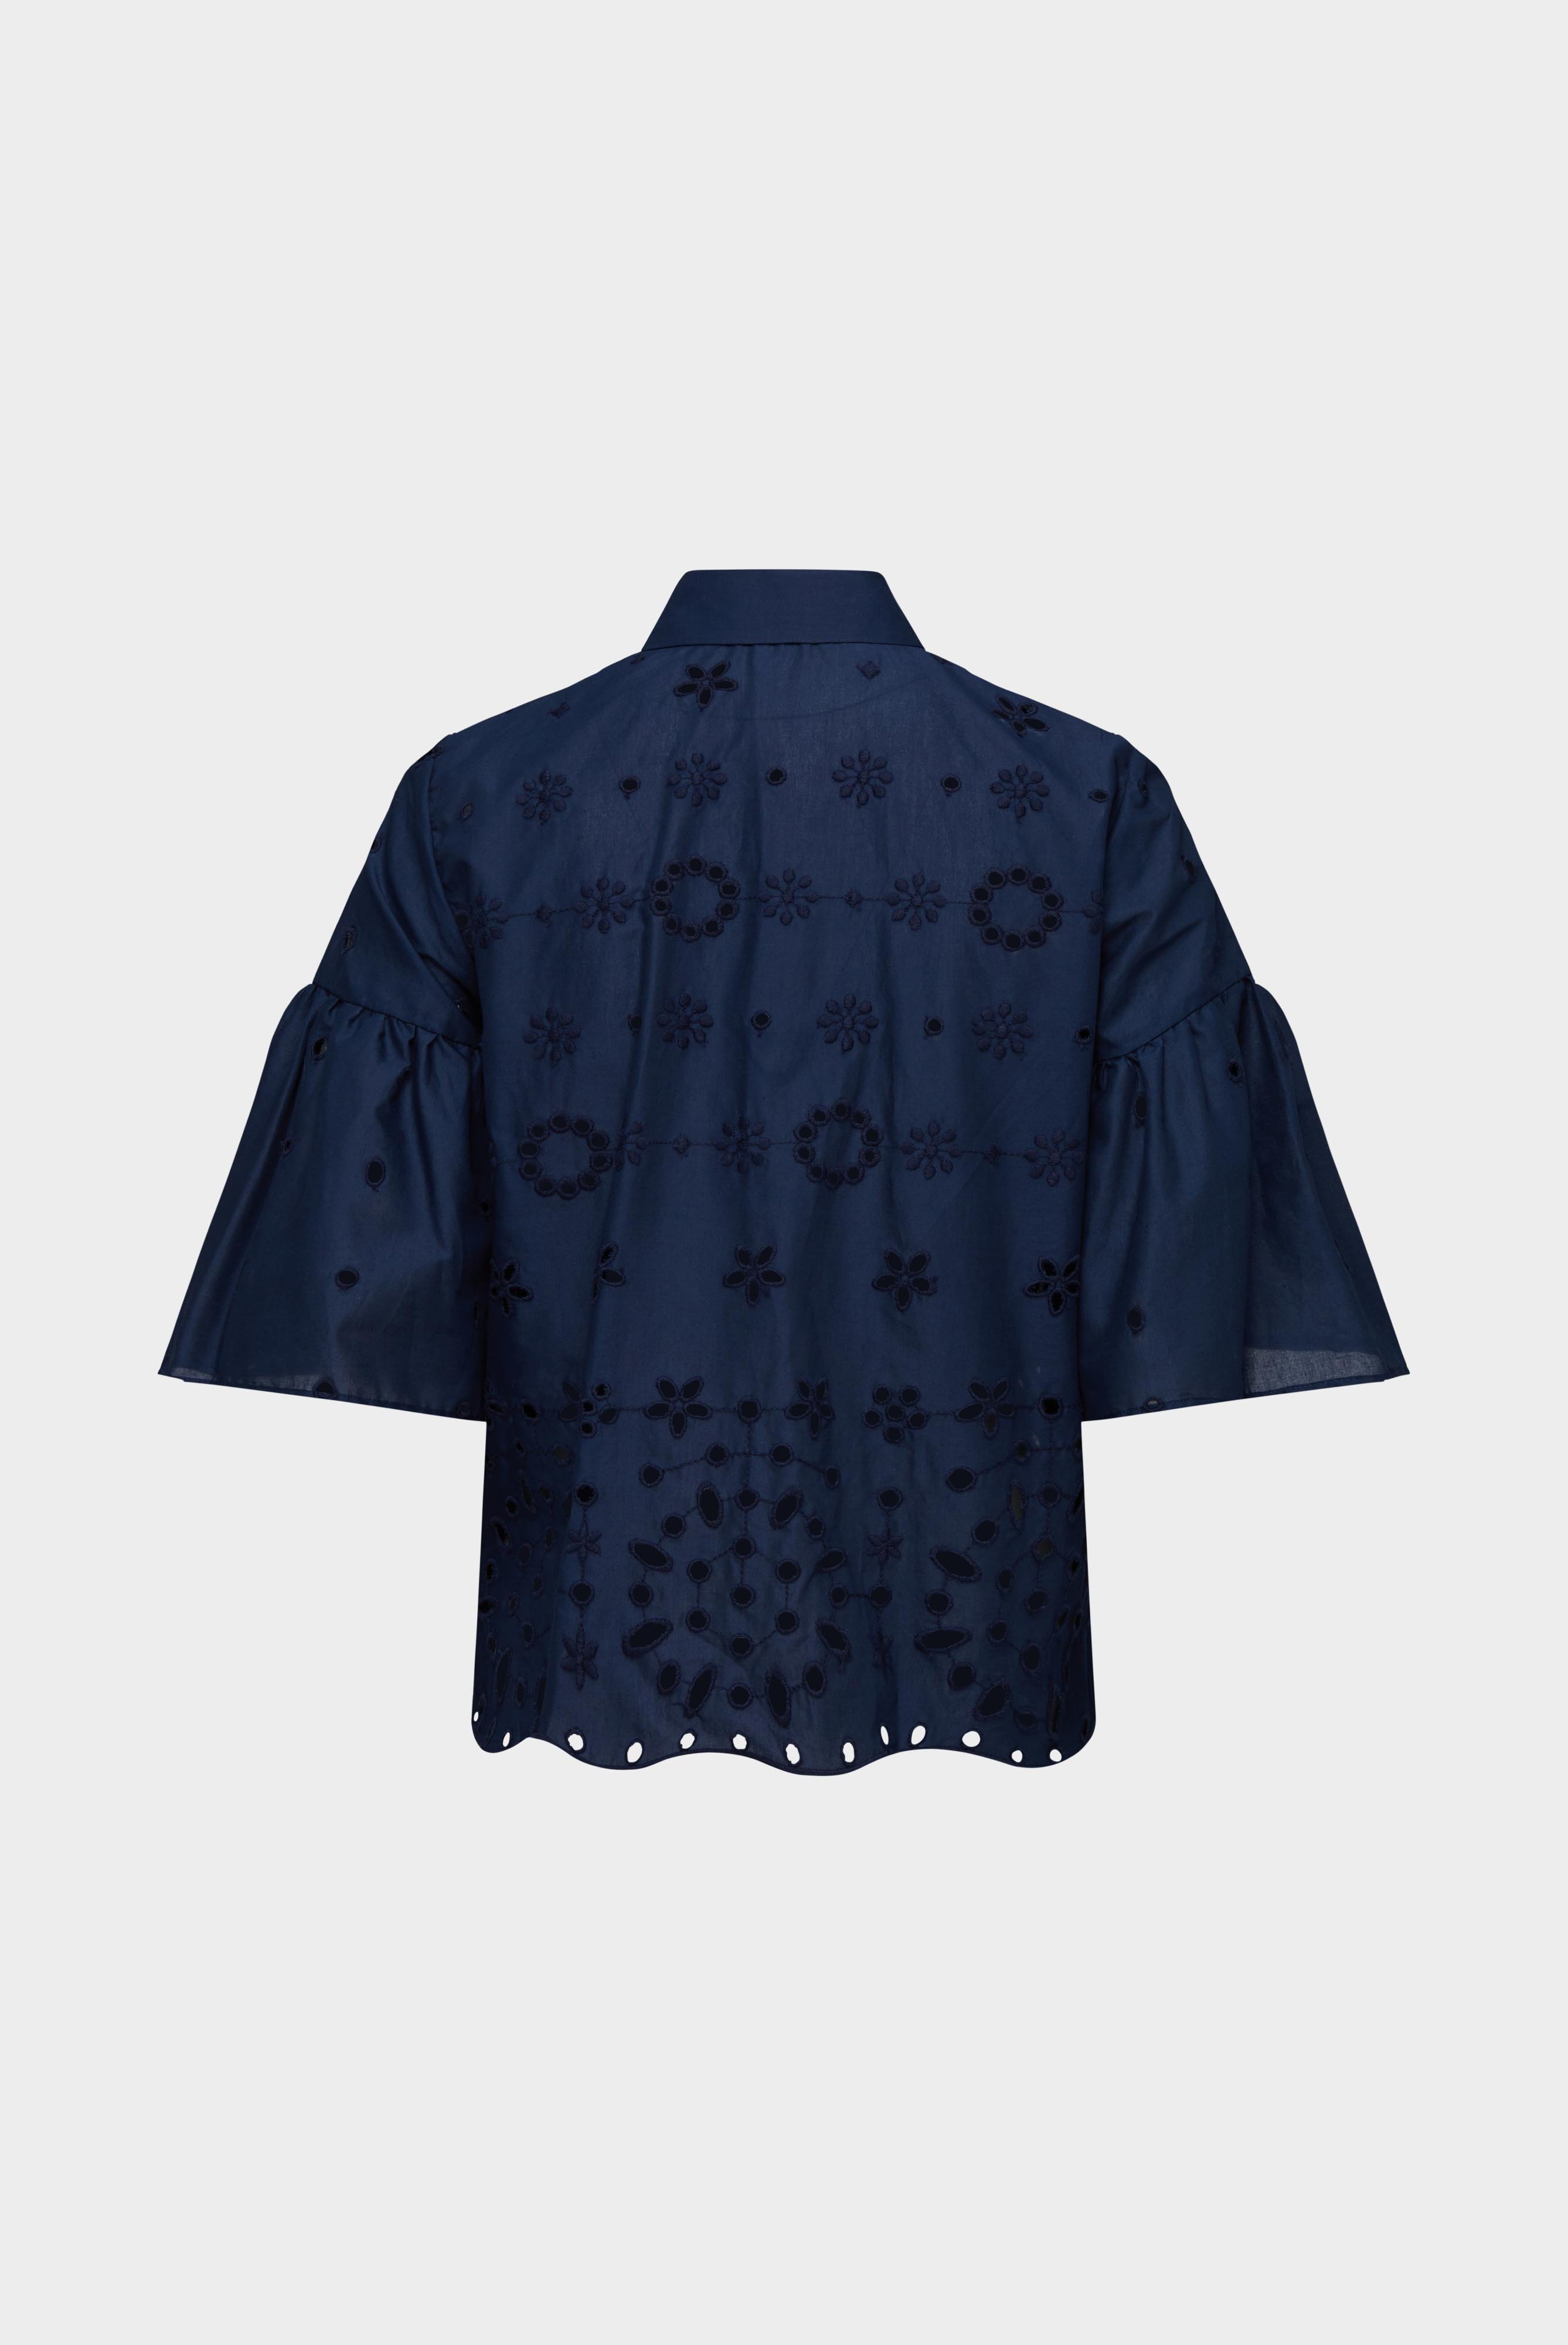 Casual Blusen+A-Linien Bluse mit Rüschendetails und Stickereien aus Baumwolle Blau+05.525V.5X.150228.790.34